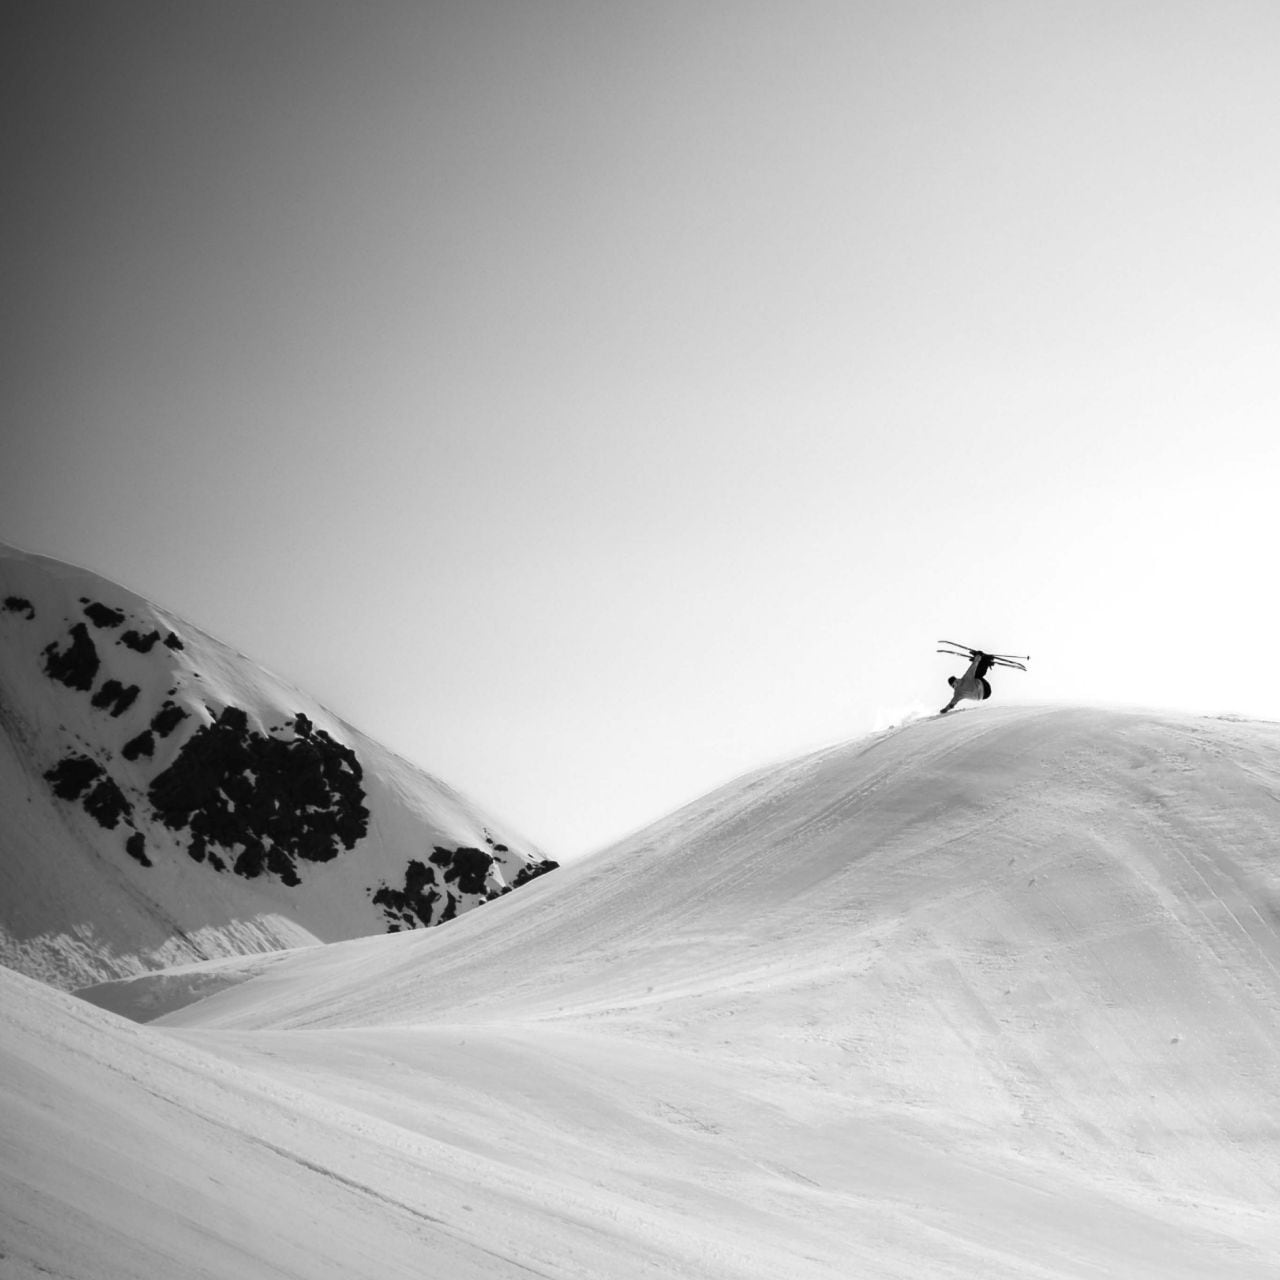 Image en action de l’athlète The North Face Dennis Ranalter effectuant une figure à skis sur une colline enneigée et damée. 